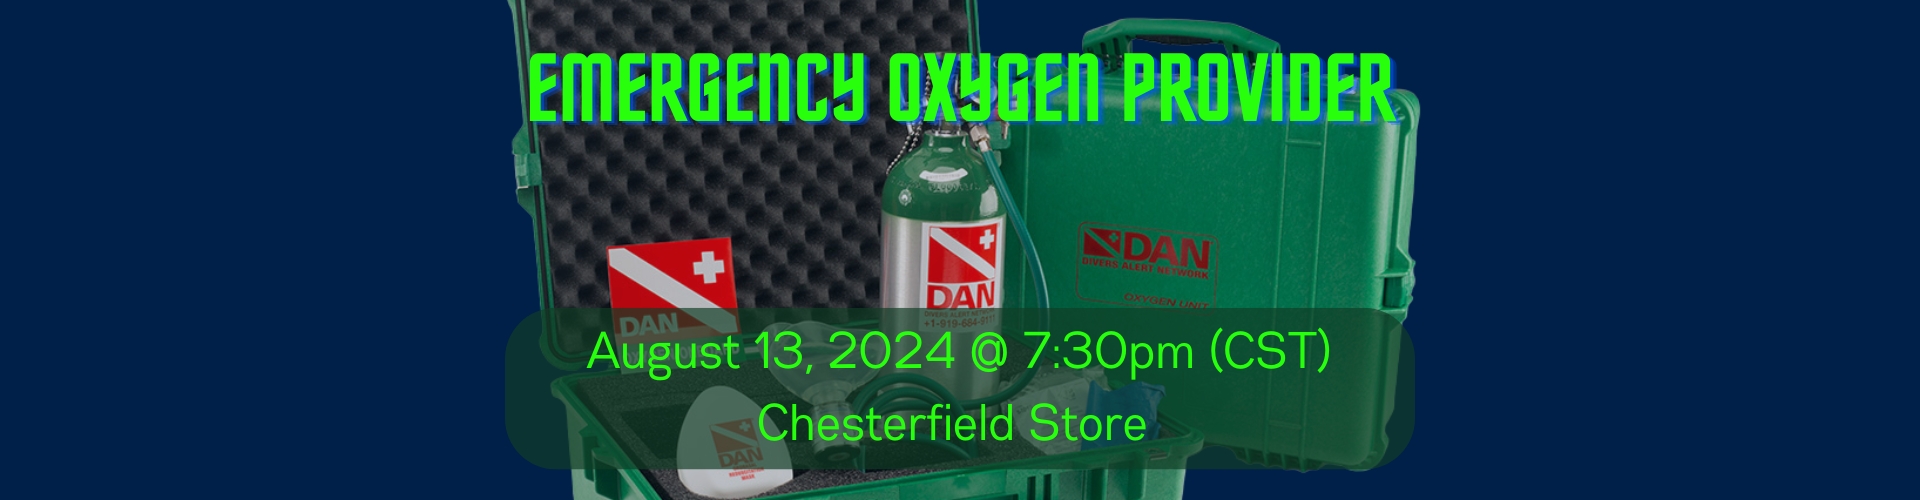 8/13 Emergency Oxygen Provider